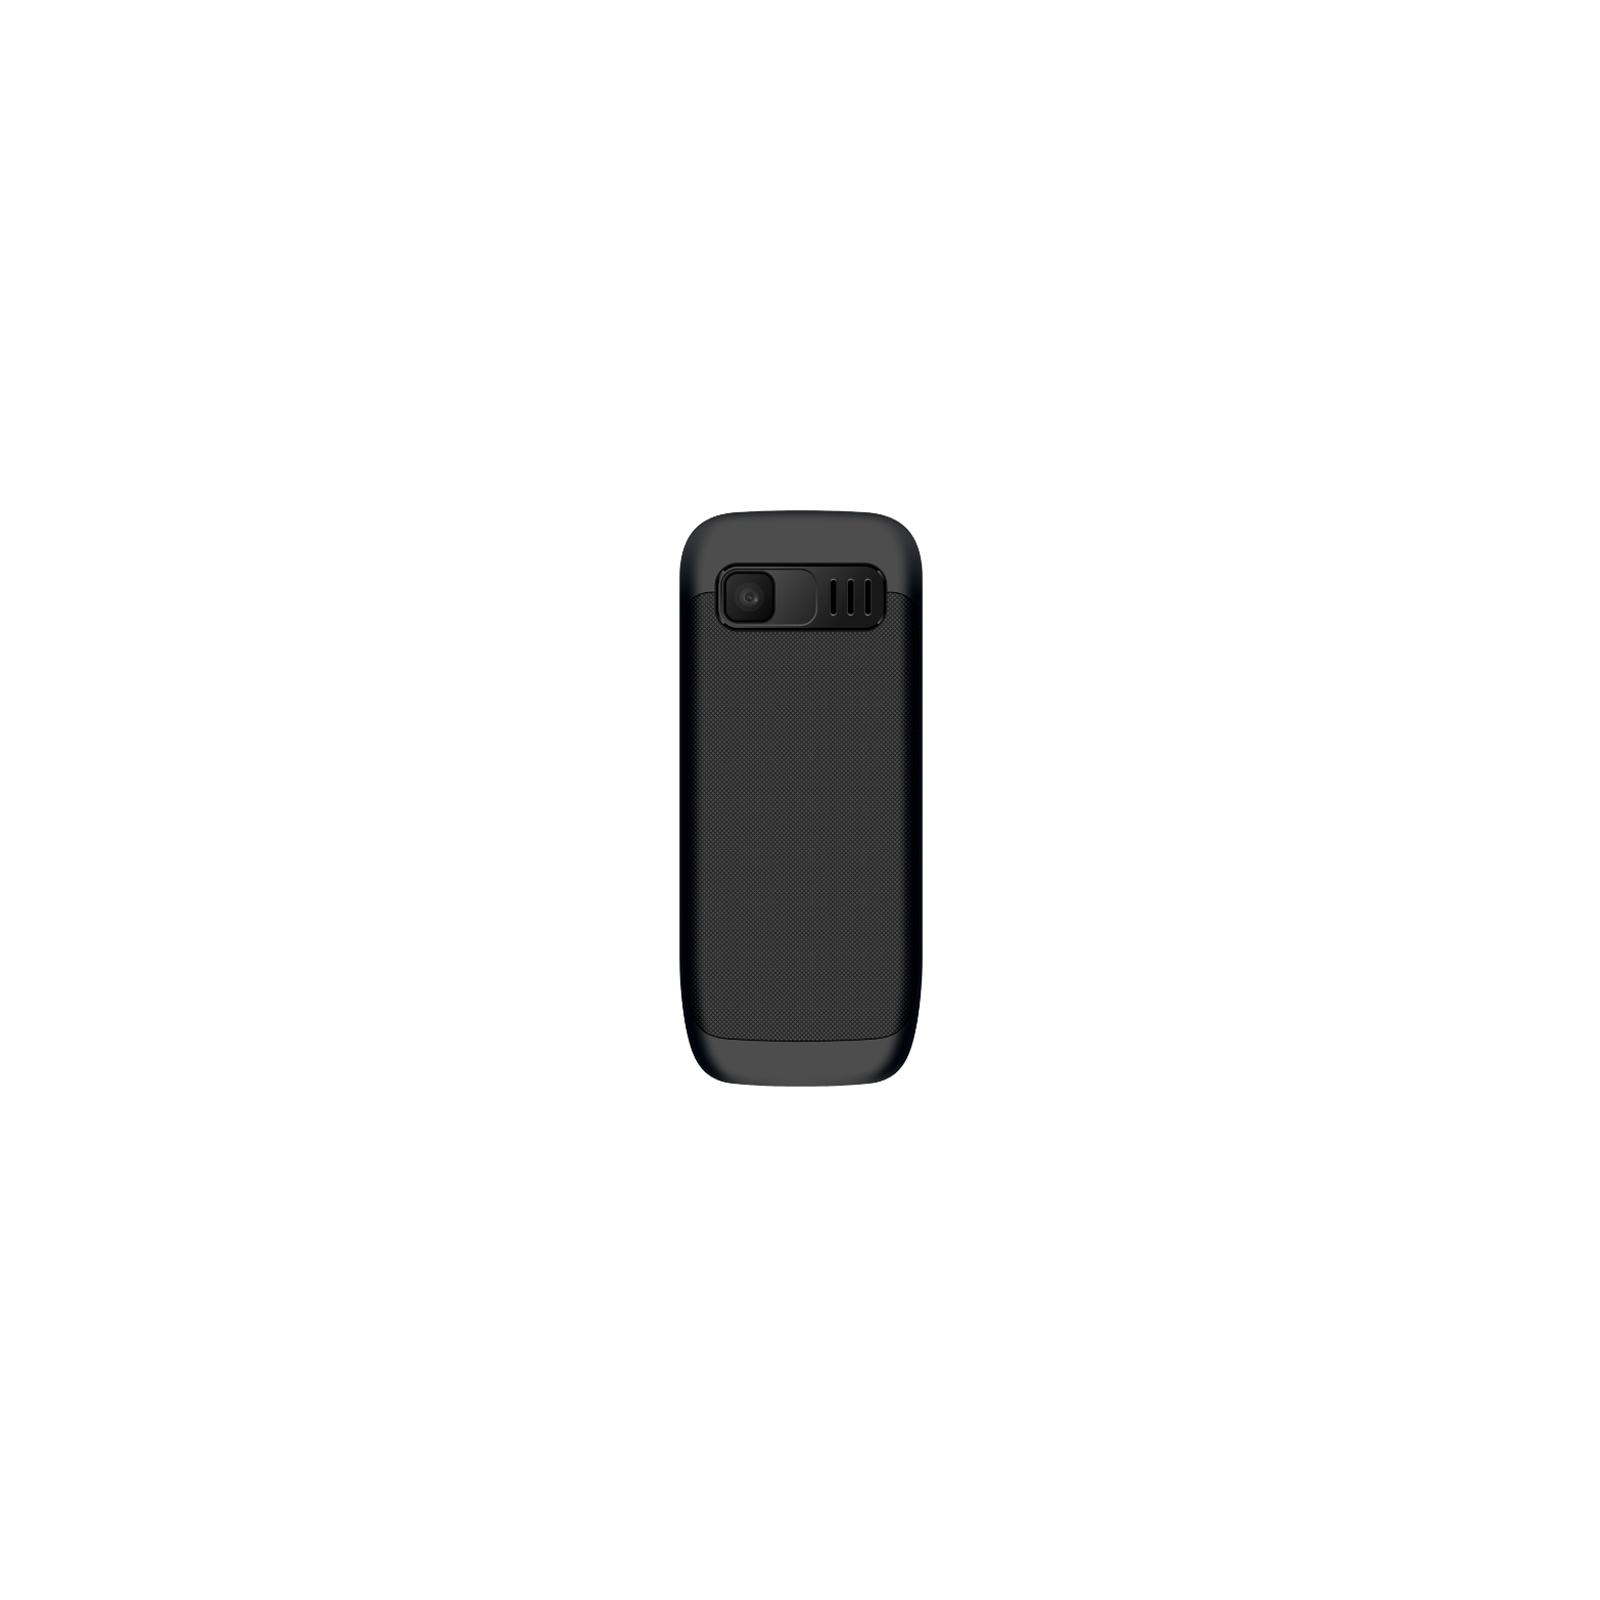 Мобильный телефон Maxcom MM134 Black изображение 2